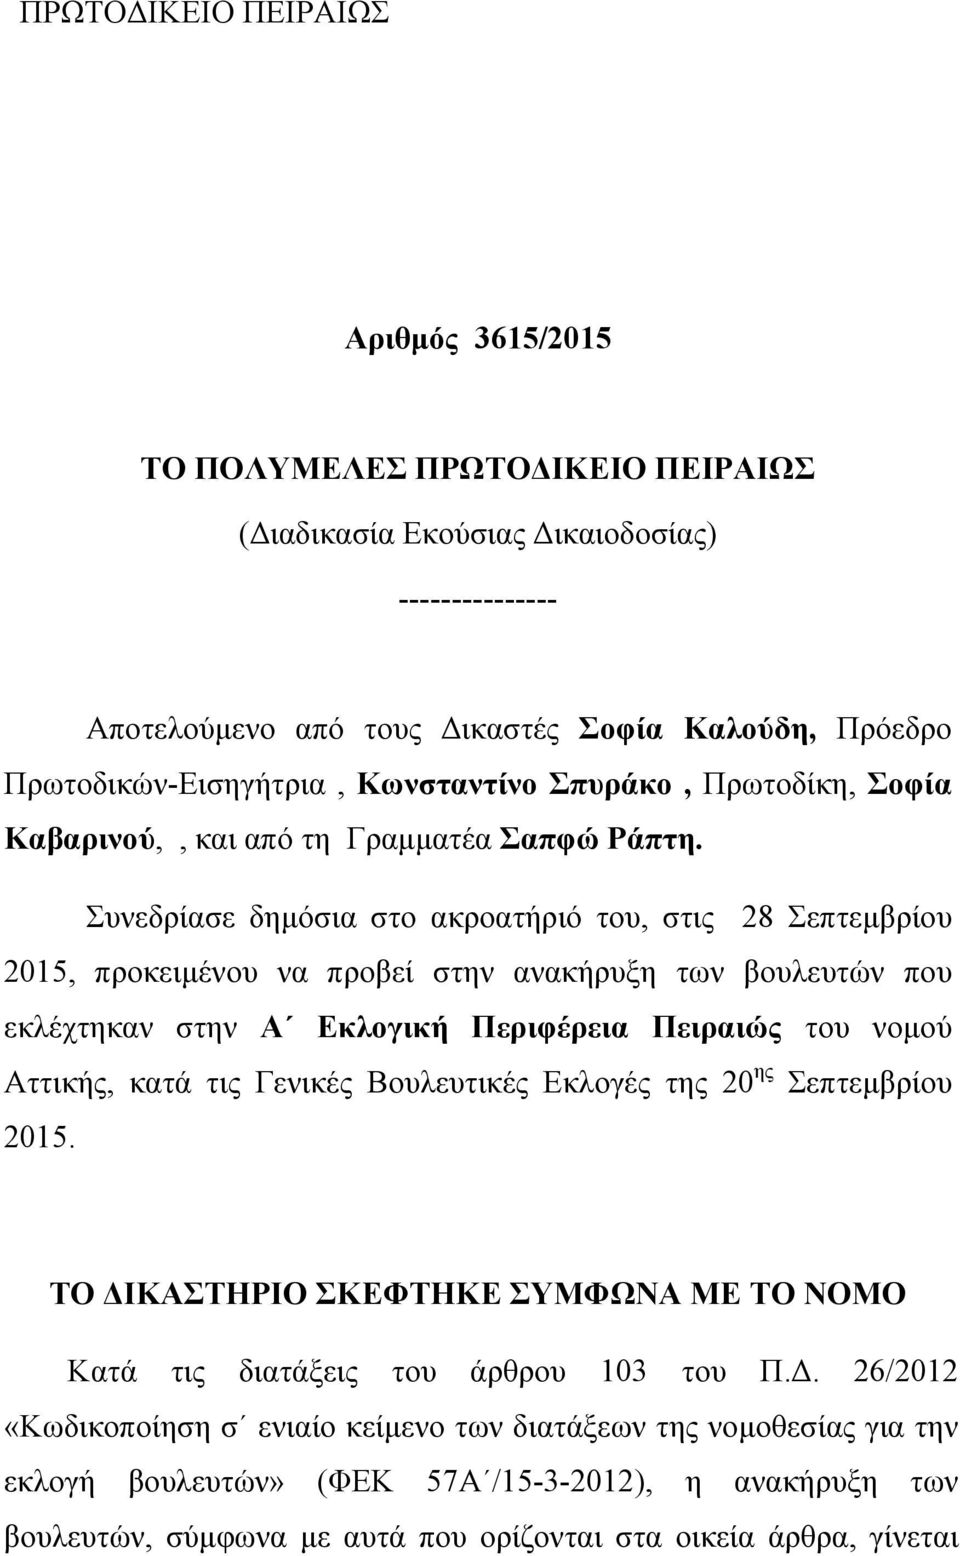 Συνεδρίασε δημόσια στο ακροατήριό του, στις 28 Σεπτεμβρίου 2015, προκειμένου να προβεί στην ανακήρυξη των βουλευτών που εκλέχτηκαν στην Α Εκλογική Περιφέρεια Πειραιώς του νομού Αττικής, κατά τις